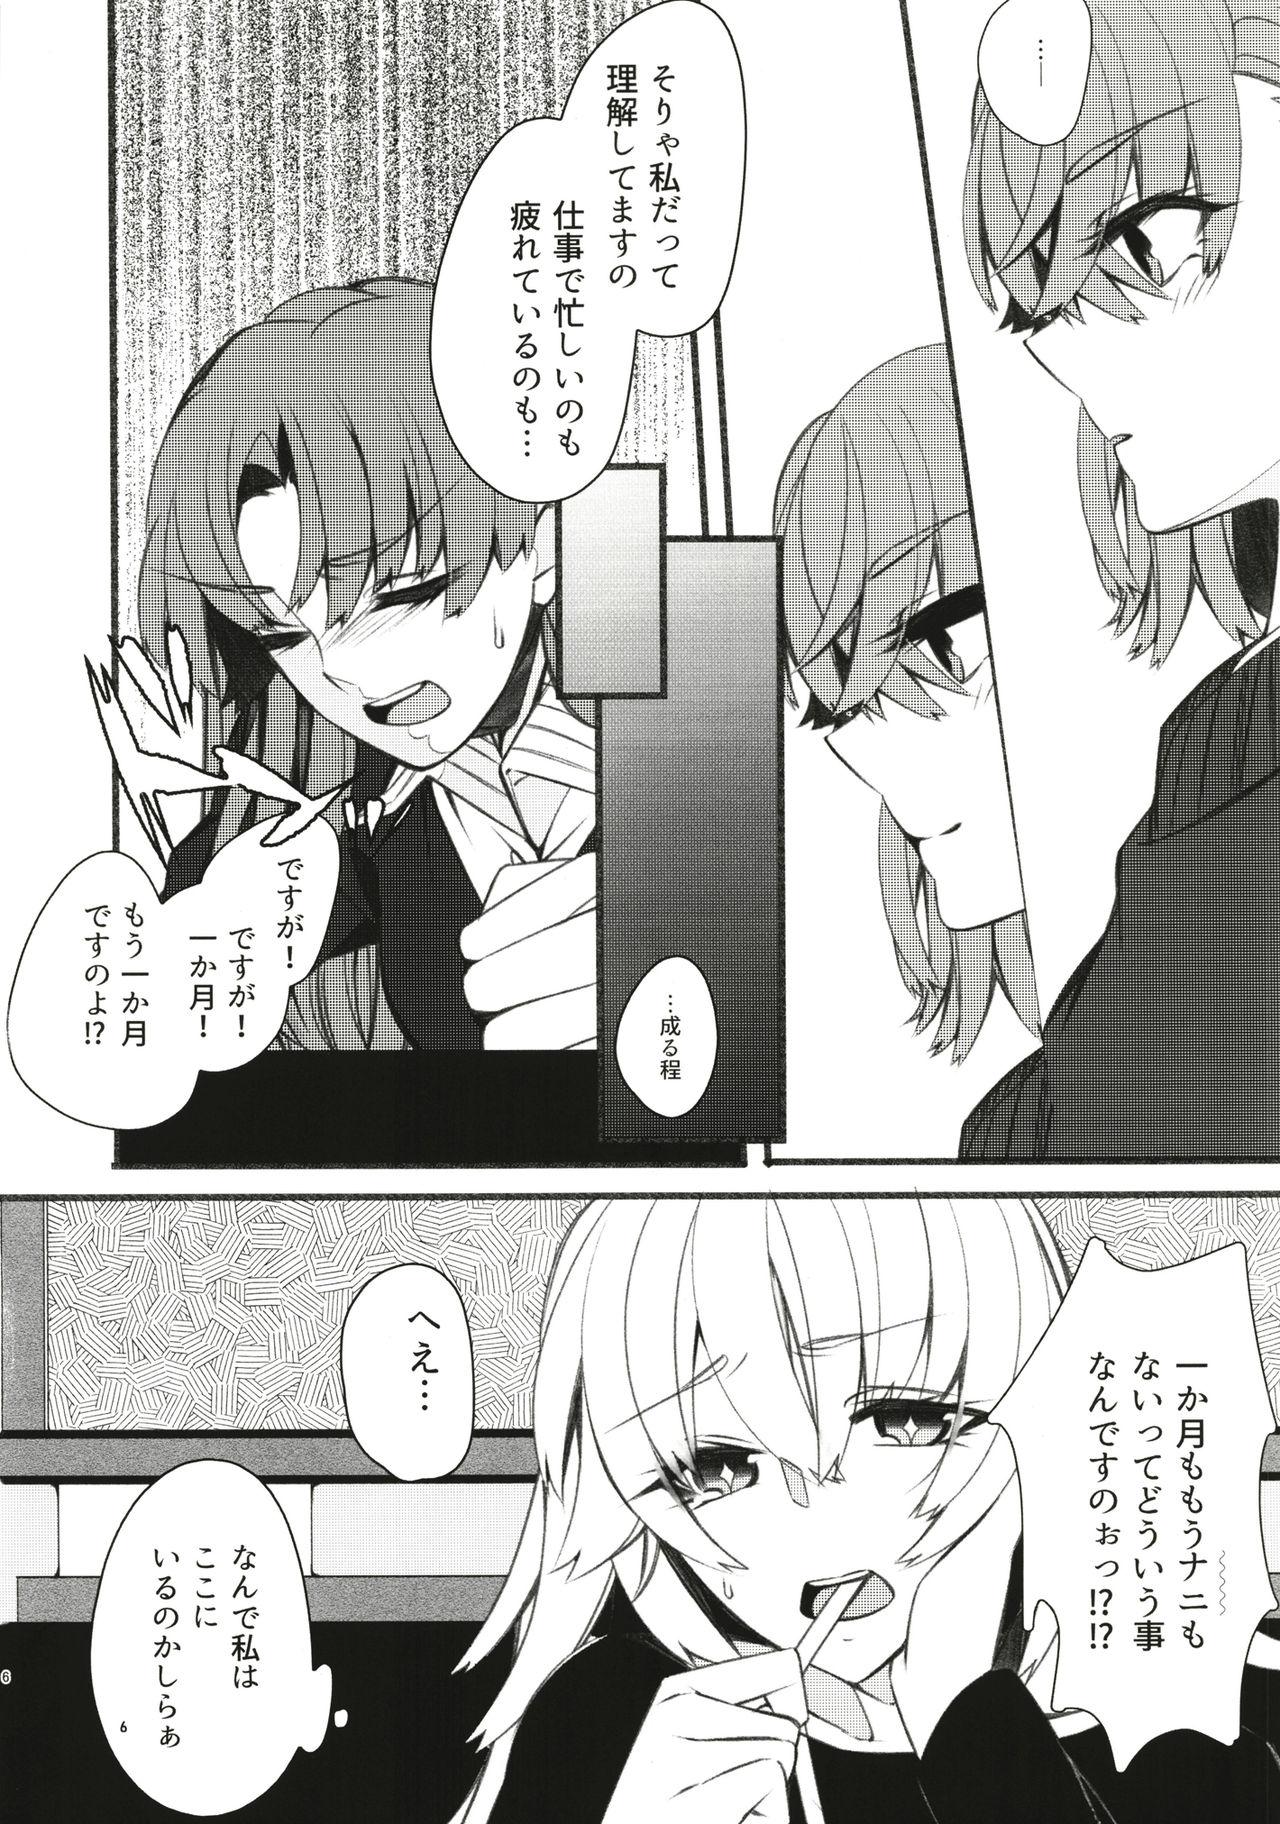 Erotica Toutotsu Desu ga!? 3 - Toaru kagaku no railgun Famosa - Page 6